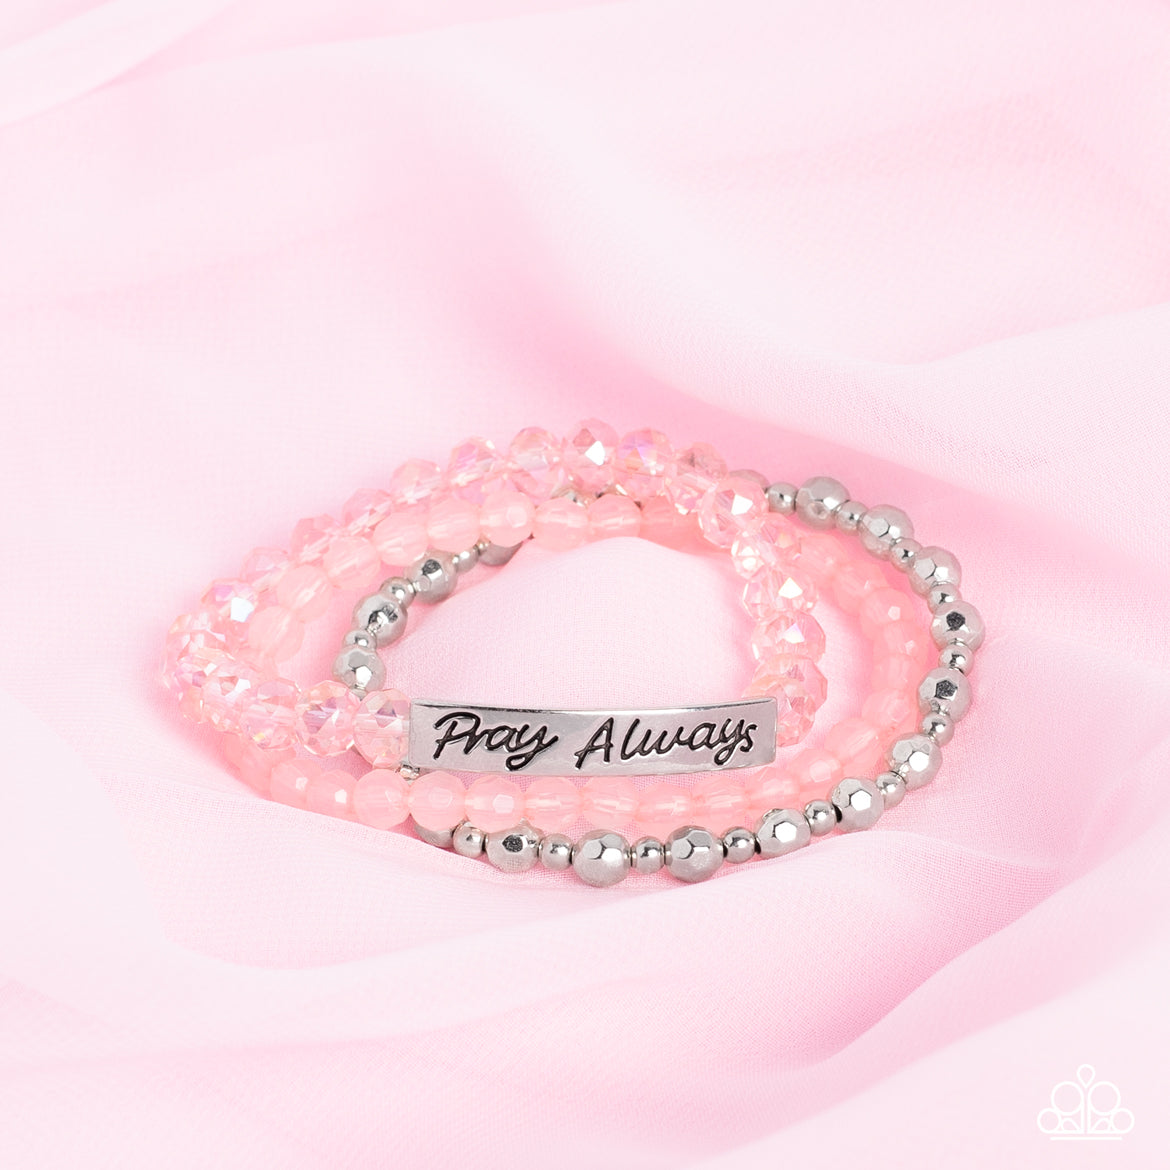 Pray Always - Pink Paparazzi Bracelet